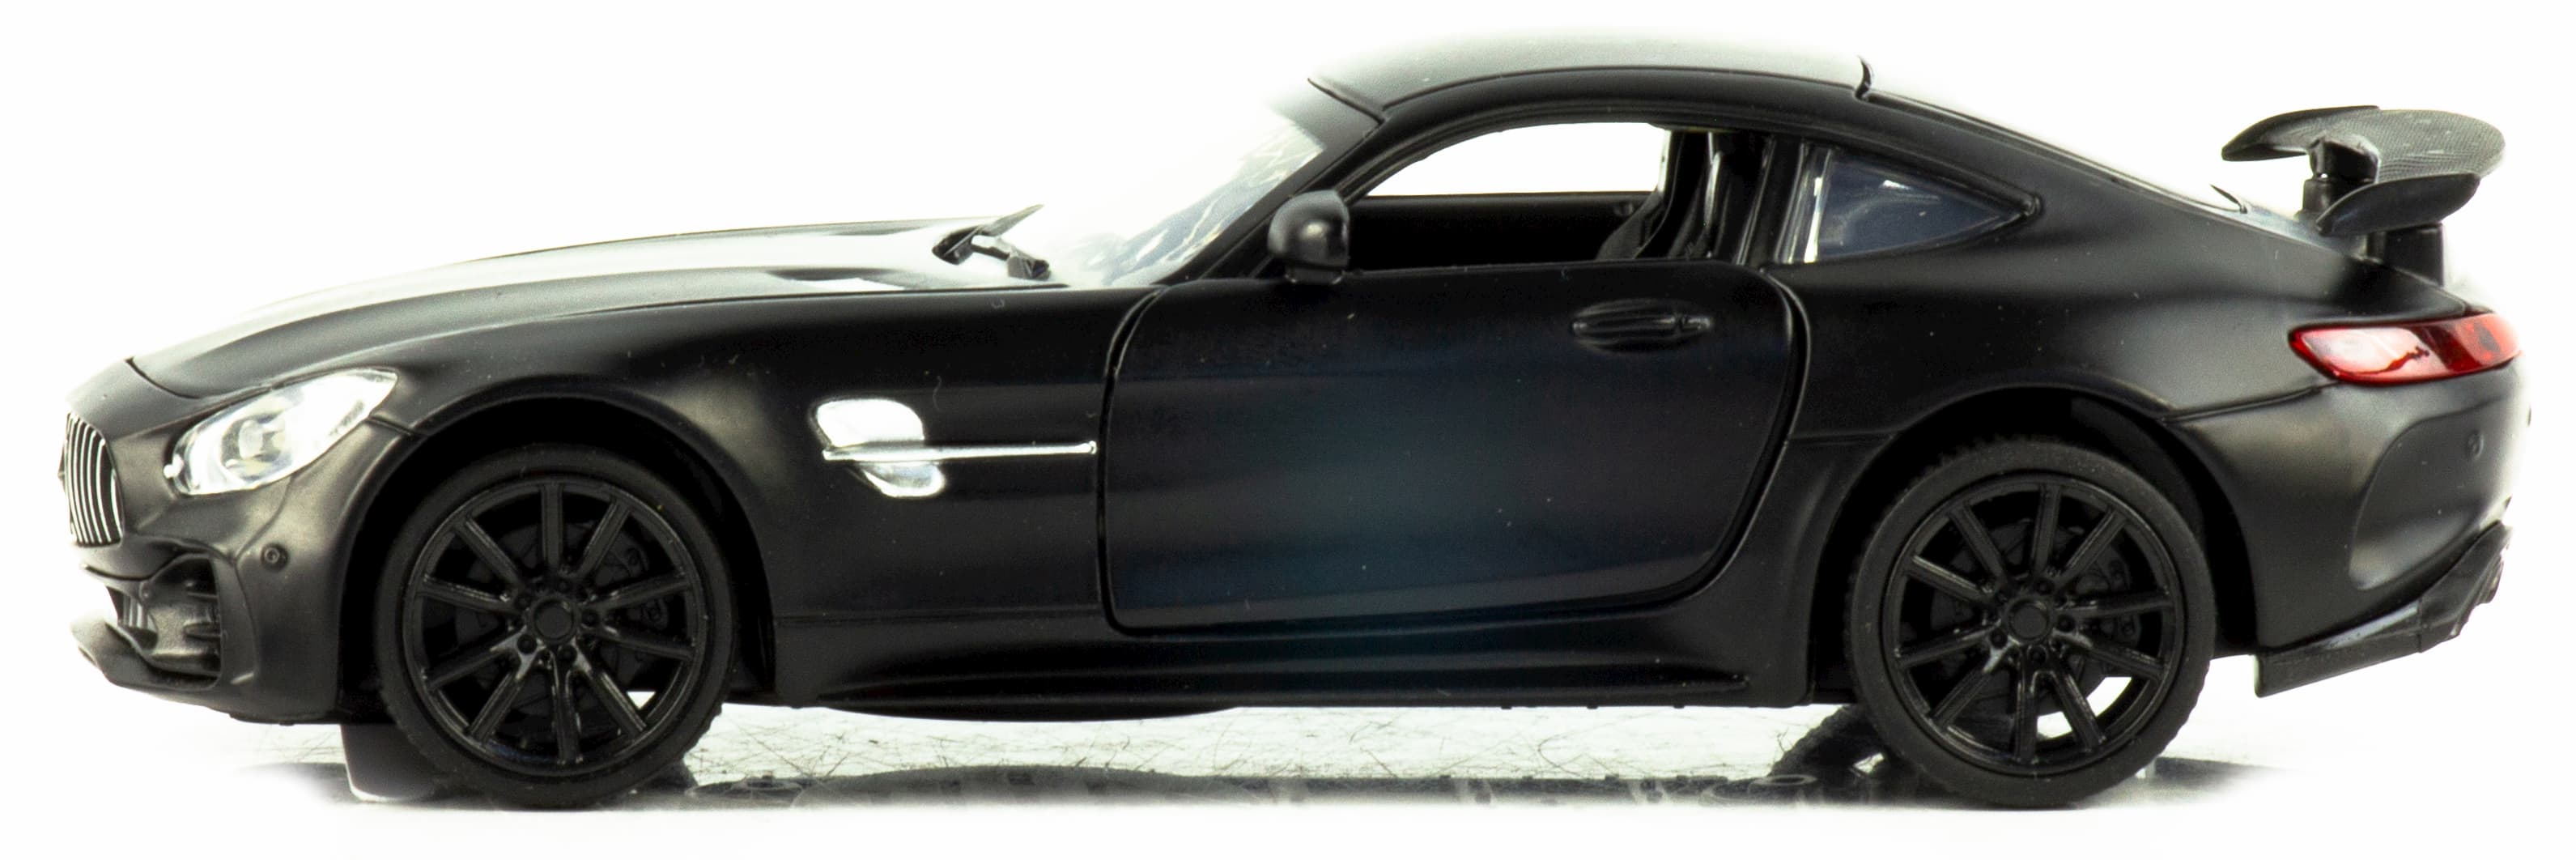 Металлическая машинка Mini Auto 1:32 «Mercedes AMG GT» 3222B, 15 см. инерционная, свет, звук / Микс